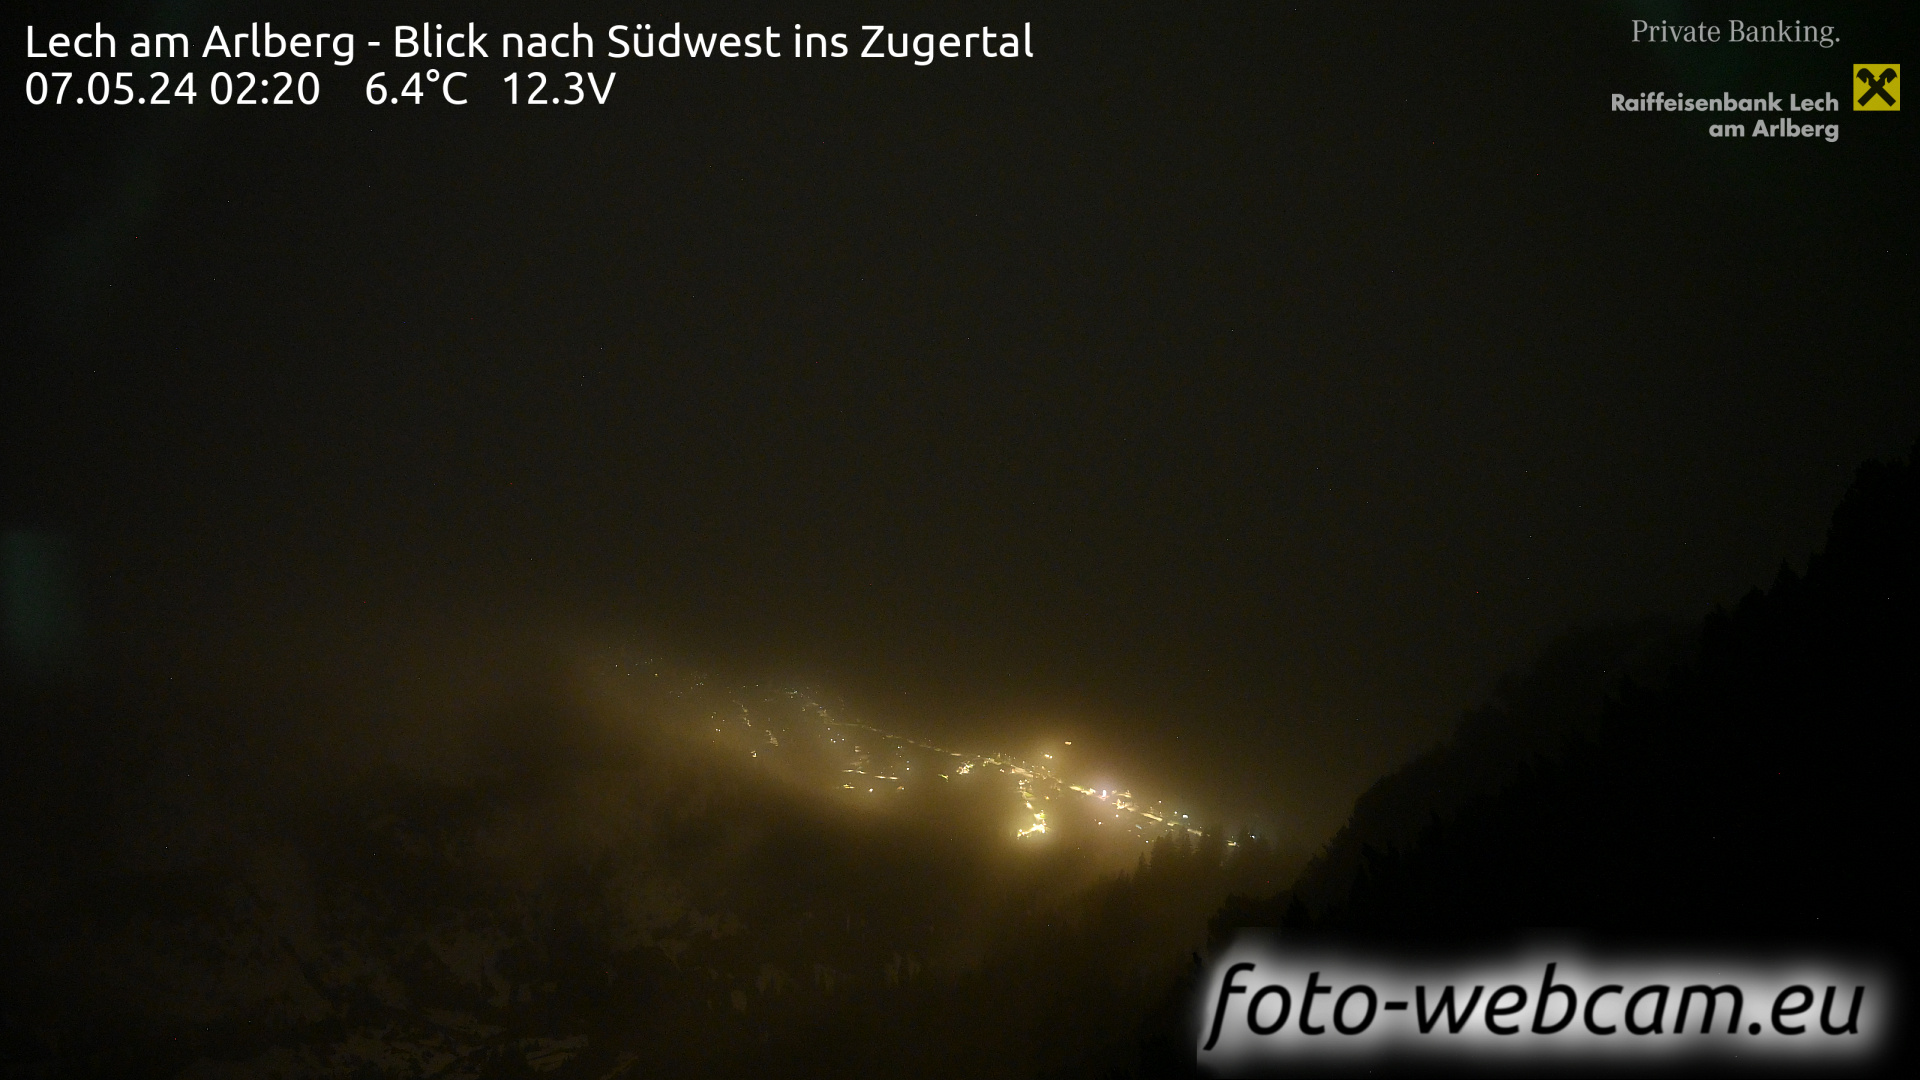 Lech am Arlberg Tue. 02:31